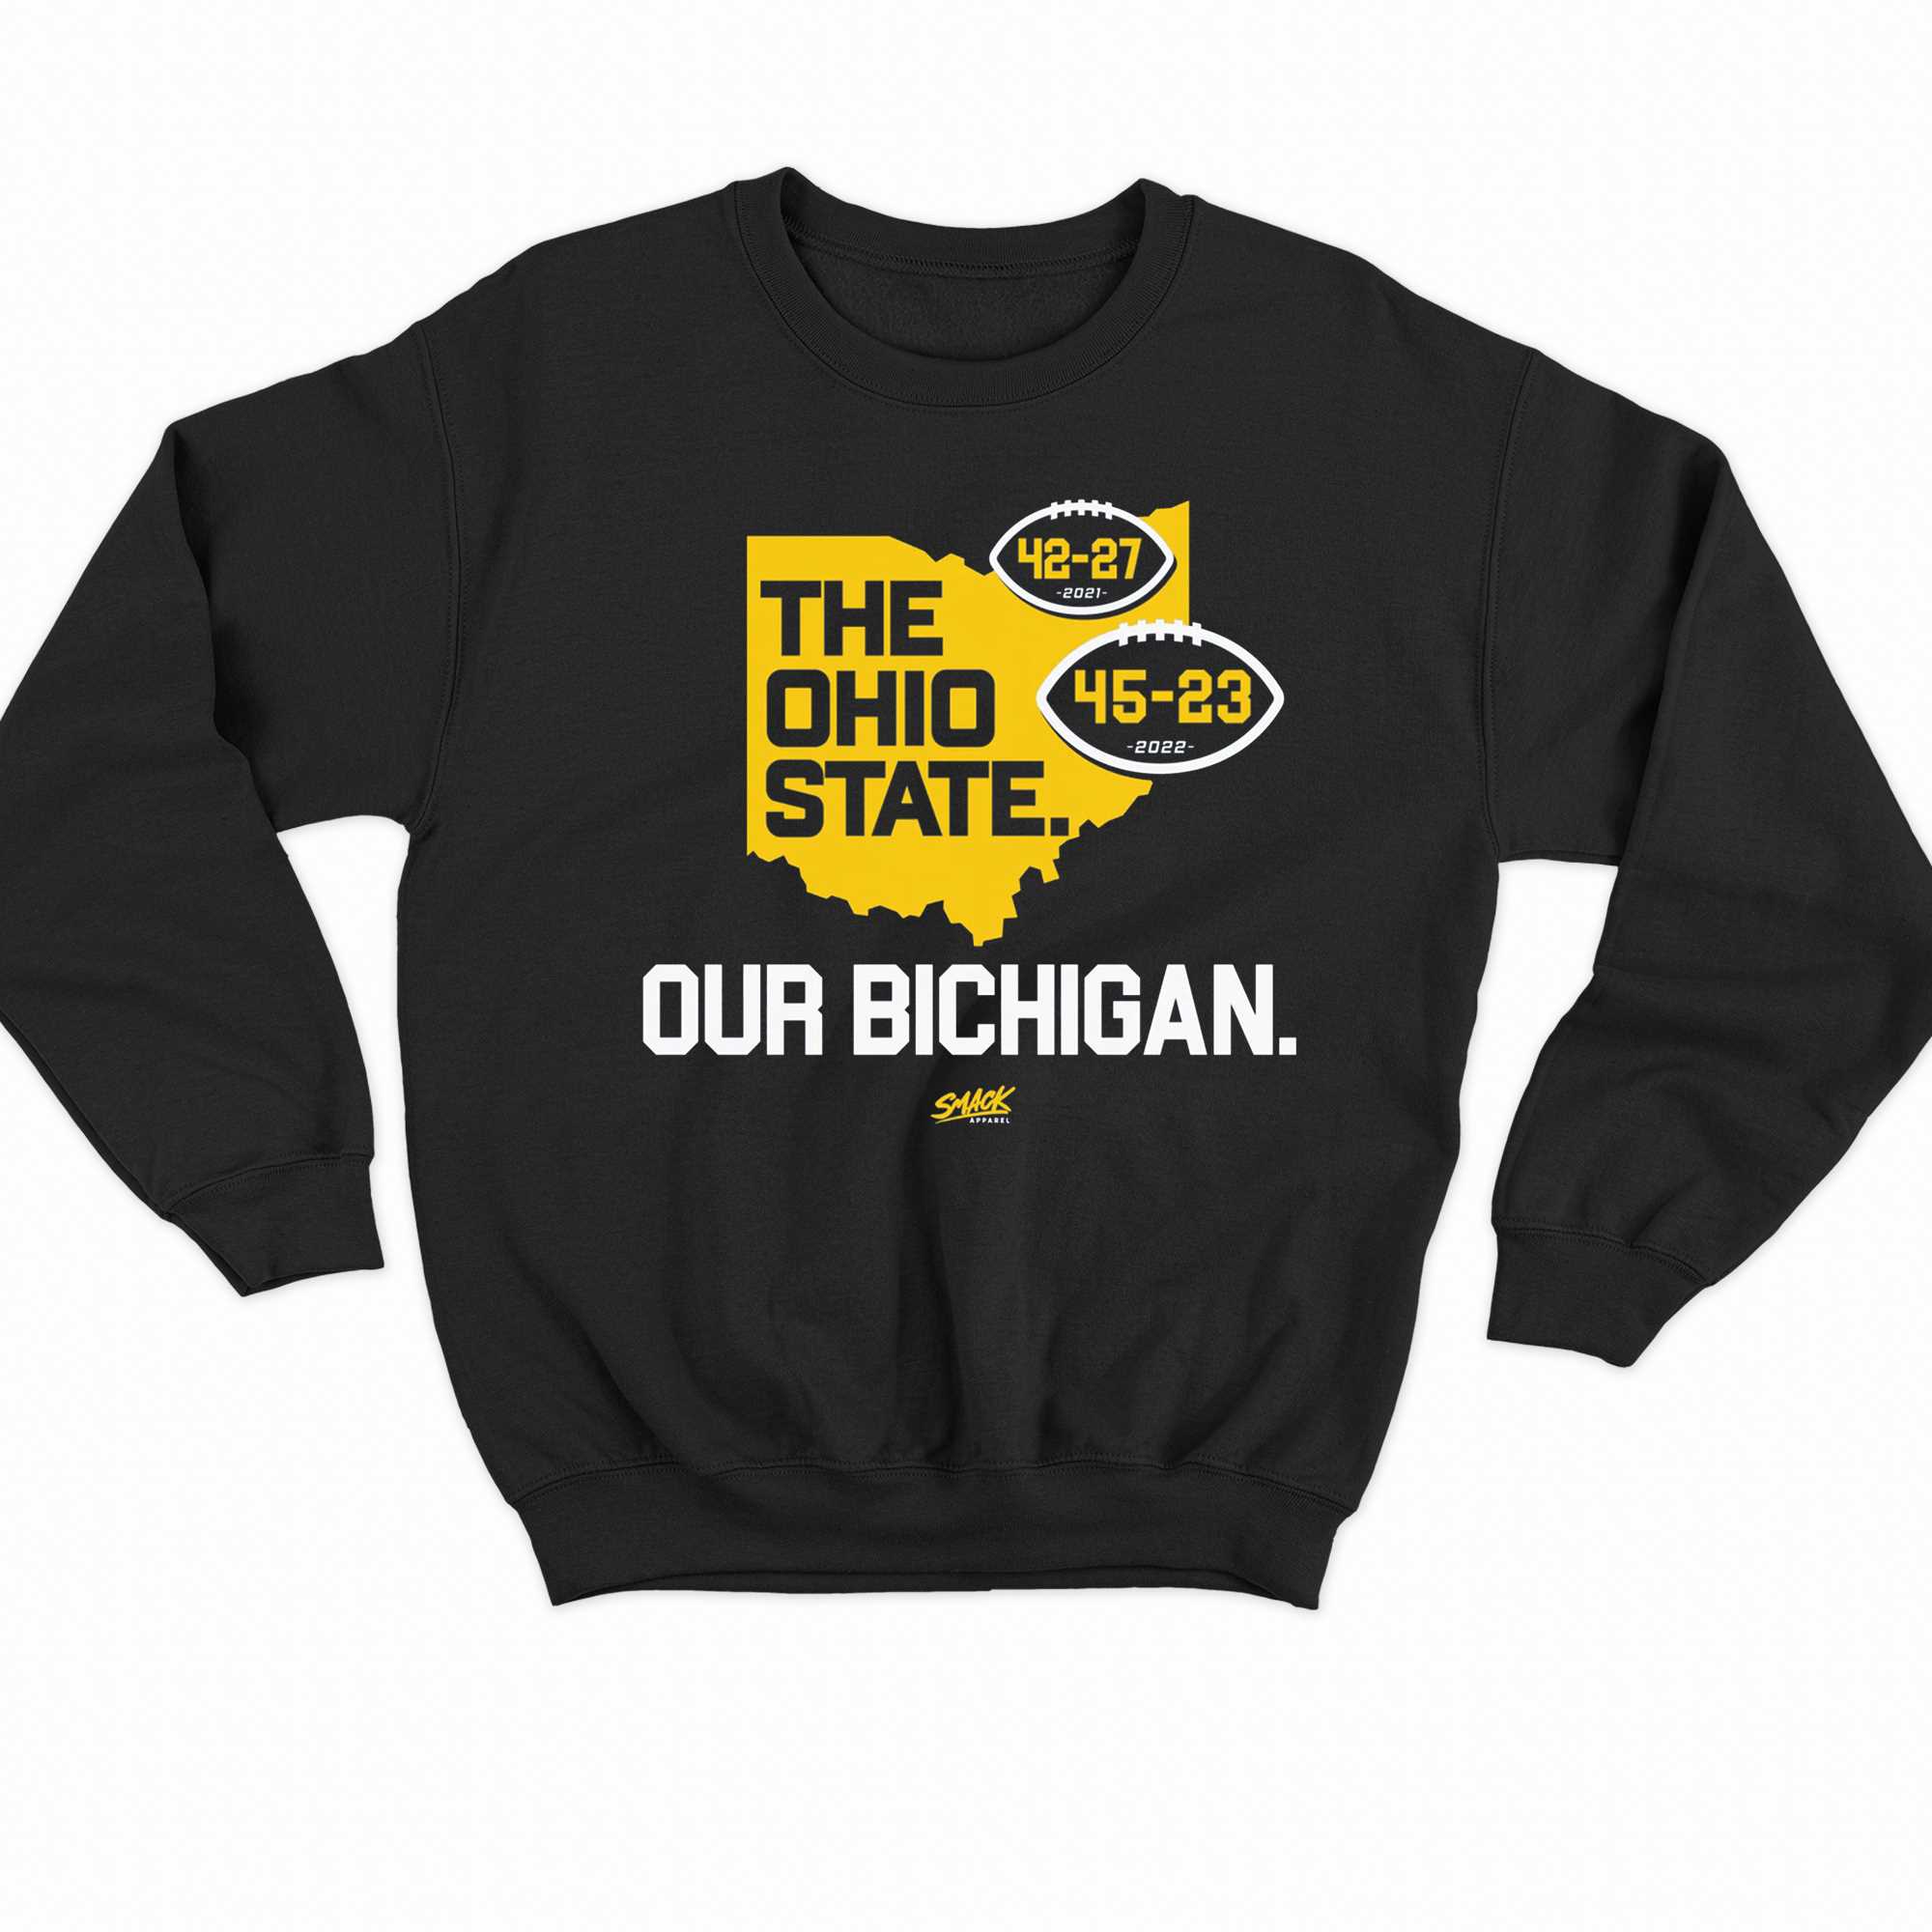 Our Bichigan Anti-osu Score Shirt T-shirt For Michigan College Fans 